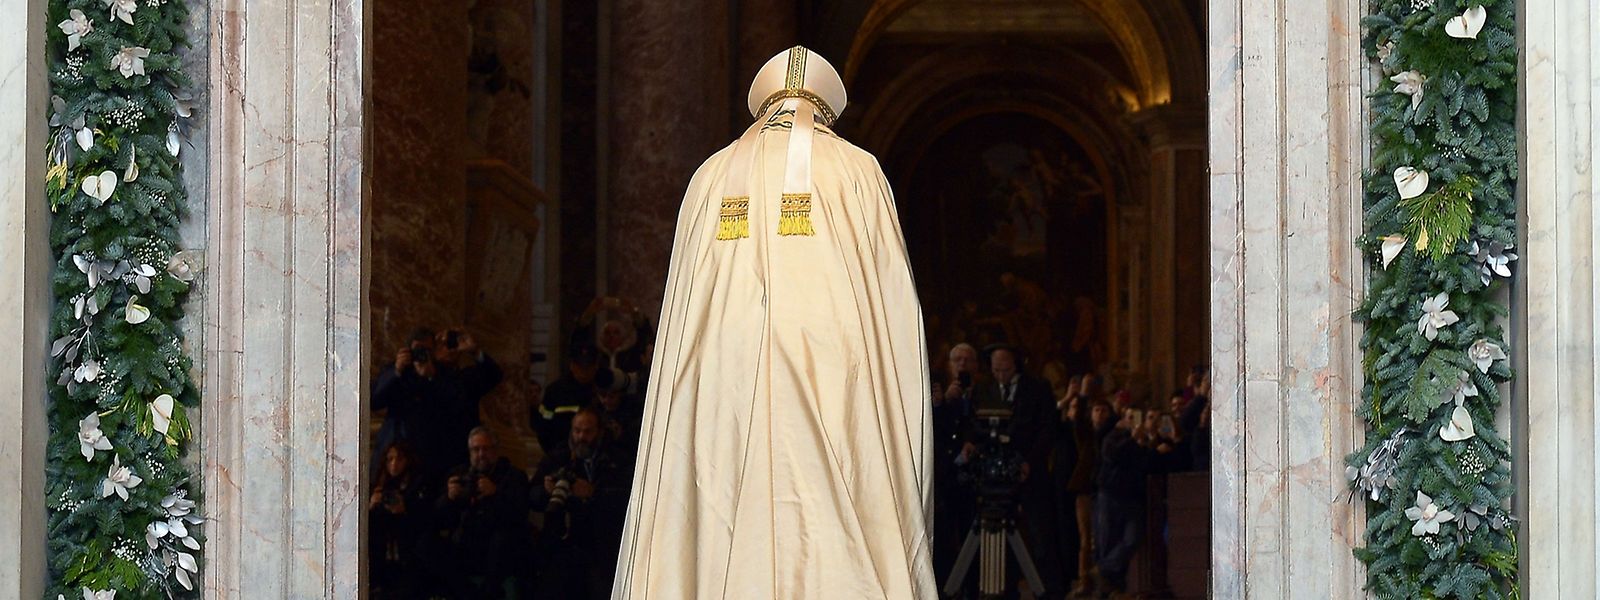 Papst Franziskus öffnet 2015 die Heilige Pforte im Petersdom und somit das Heilige Jahr.